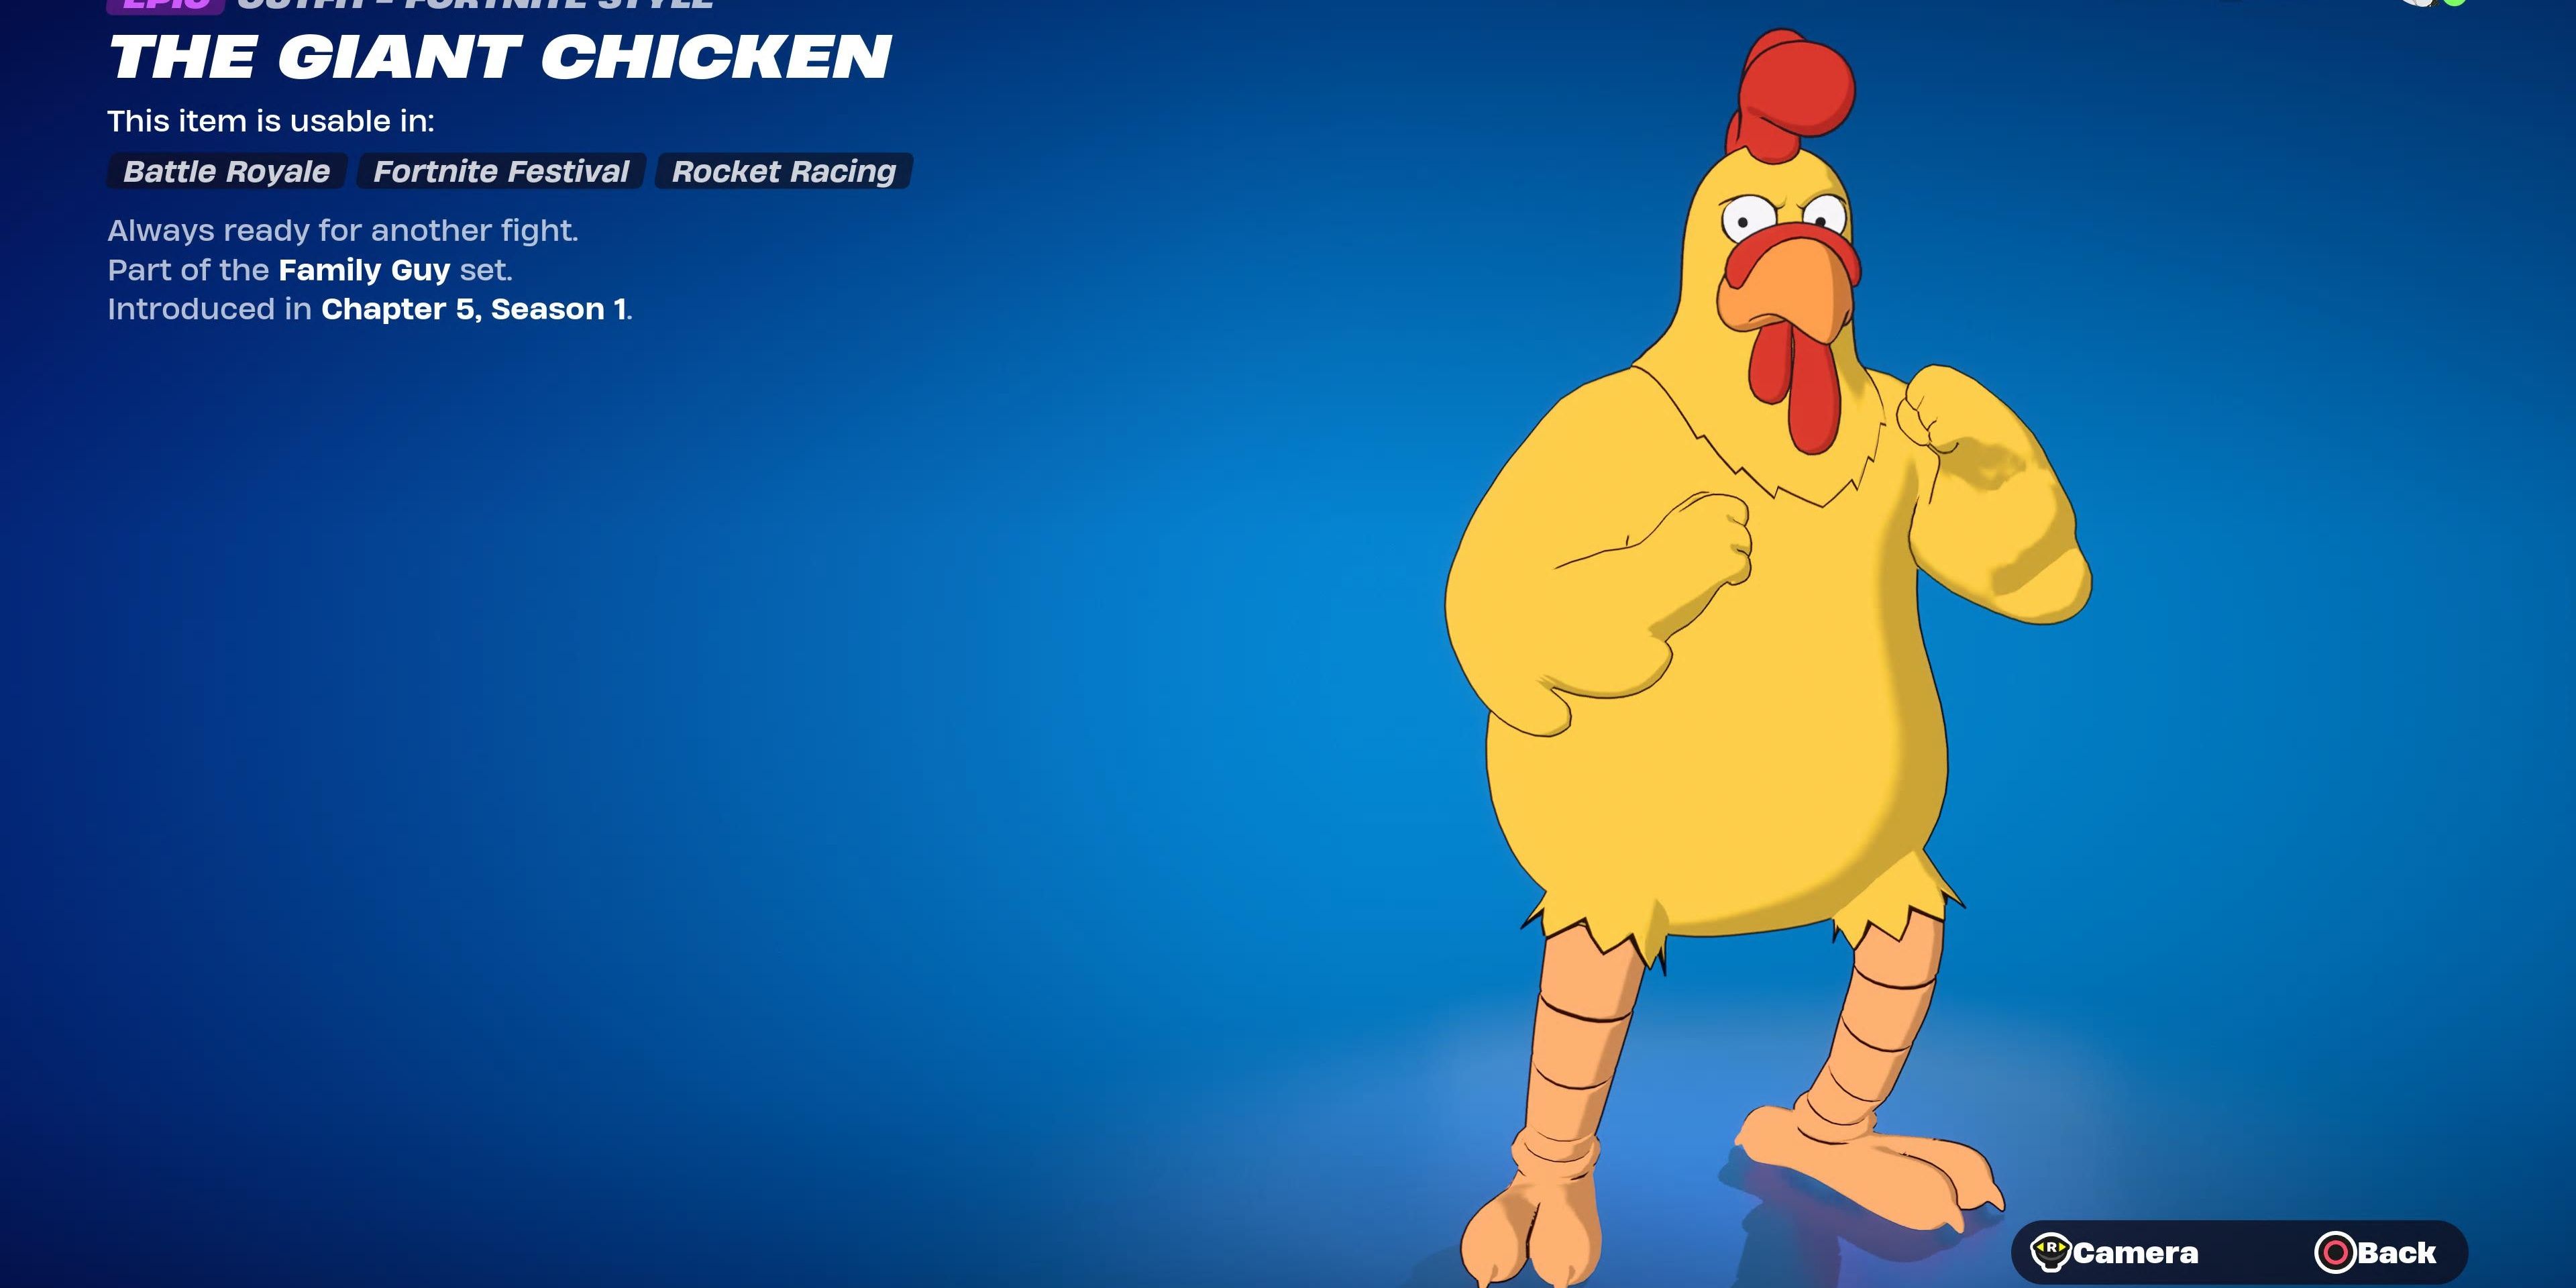 гигантский цыпленок в костюме фортнайт